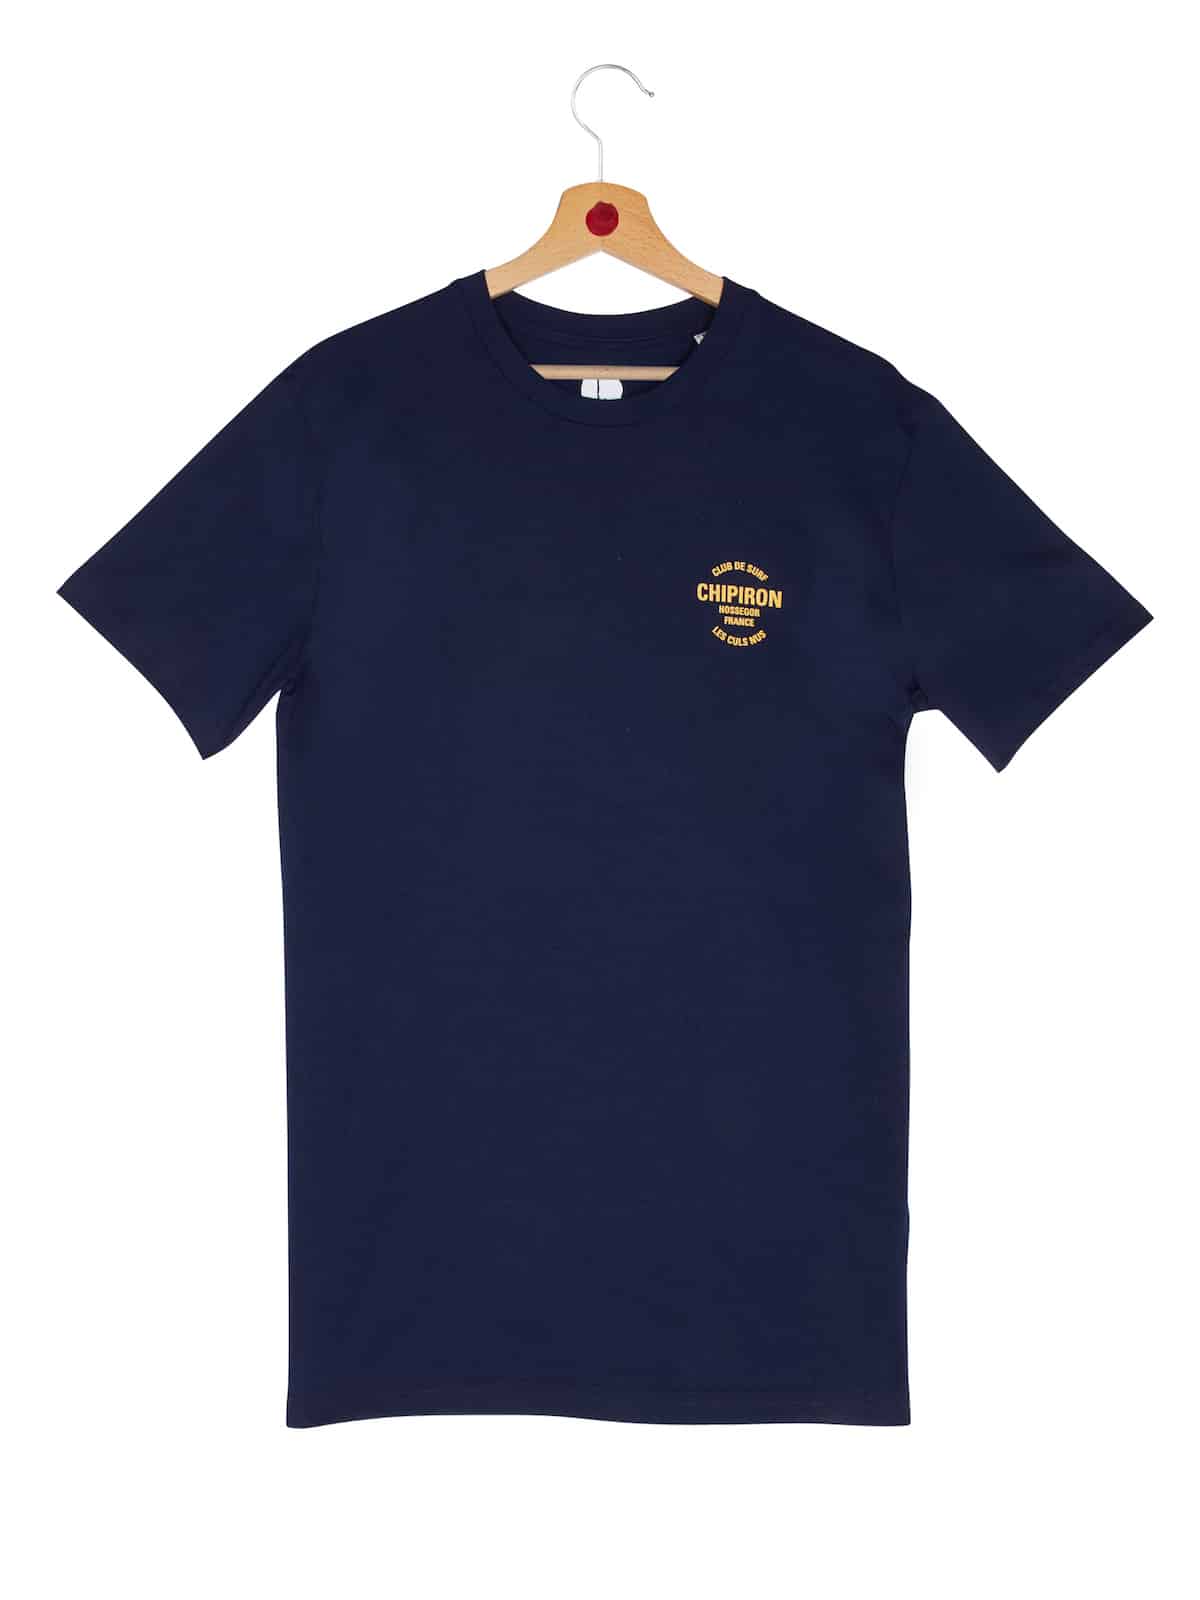 t-shirt club de surf Chipiron hossegor navy